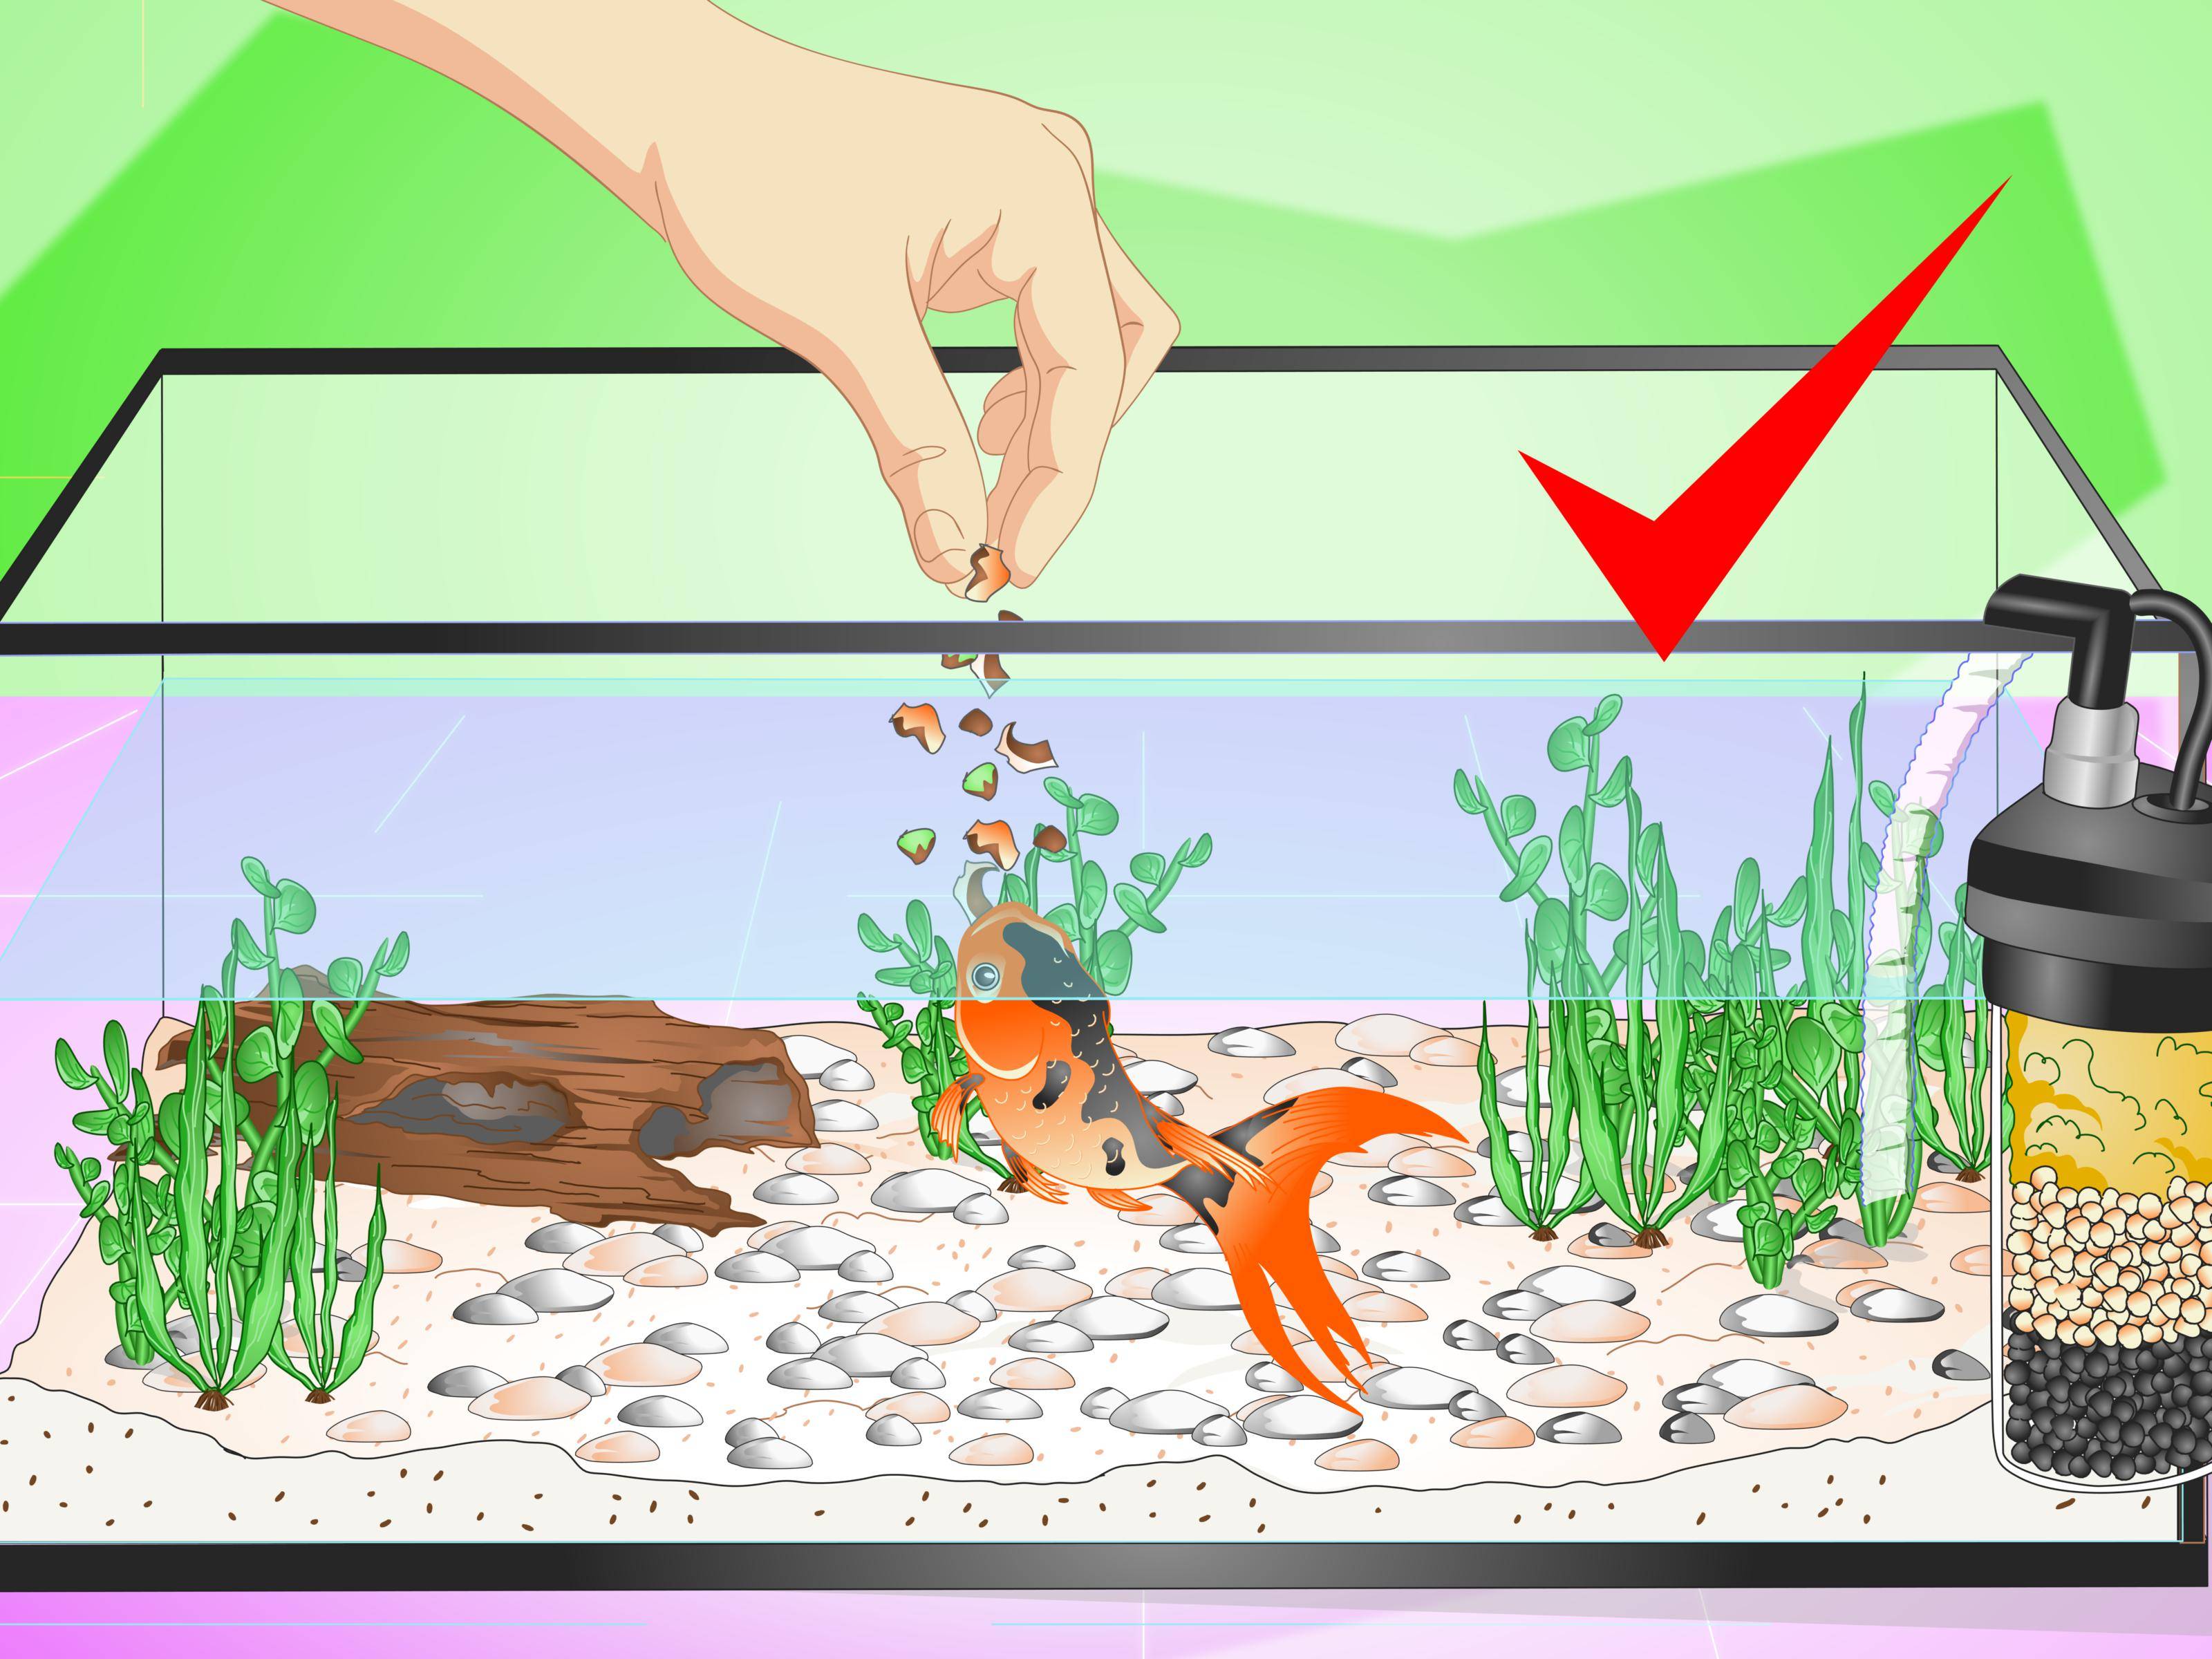 Как часто меняется вода. Кормление рыб в аквариуме. Золотая рыбка в аквариуме. Аквариум с рыбками для детей. Иллюстрации рыбки в аквариуме для детей.